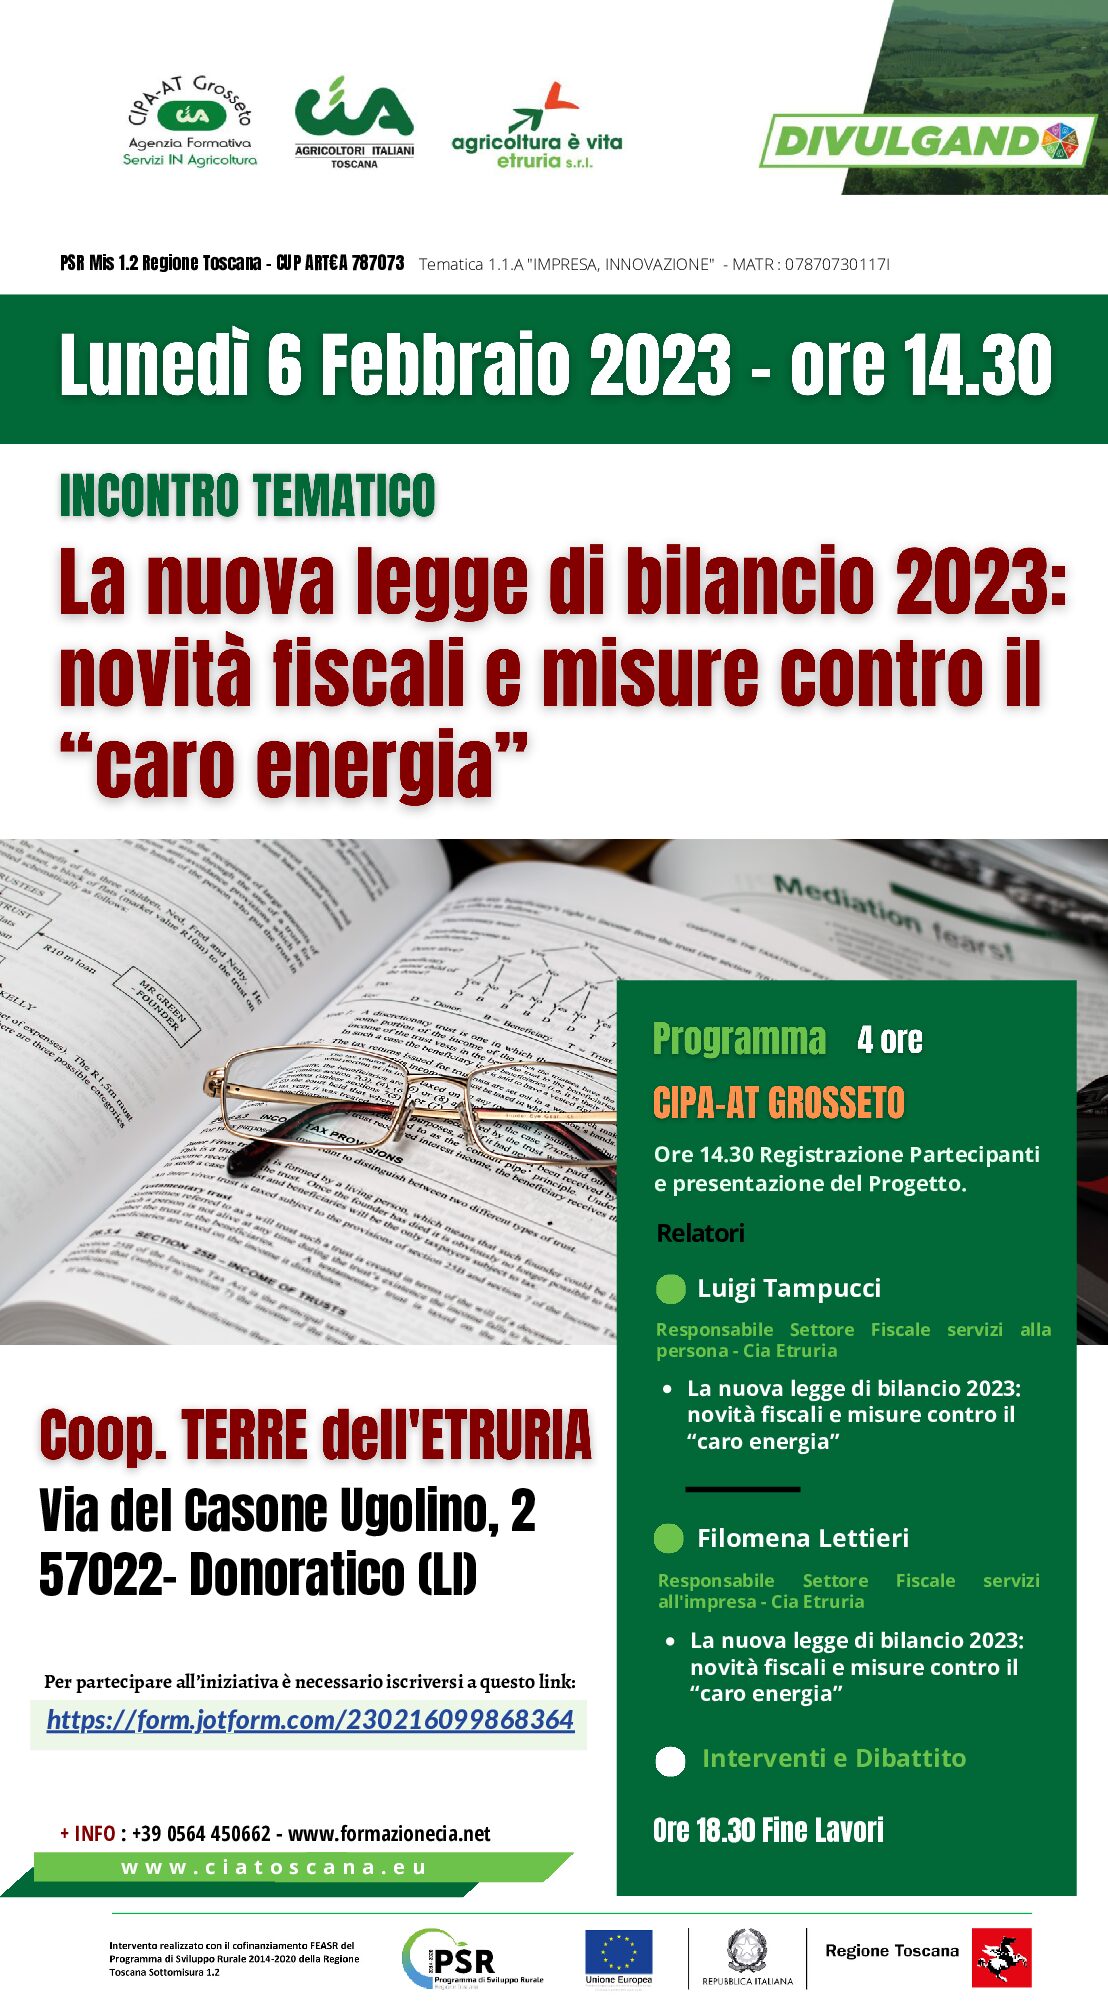 Incontro Tematico La nuova legge di bilancio 2023: novità fiscali e misure contro il “caro energia”